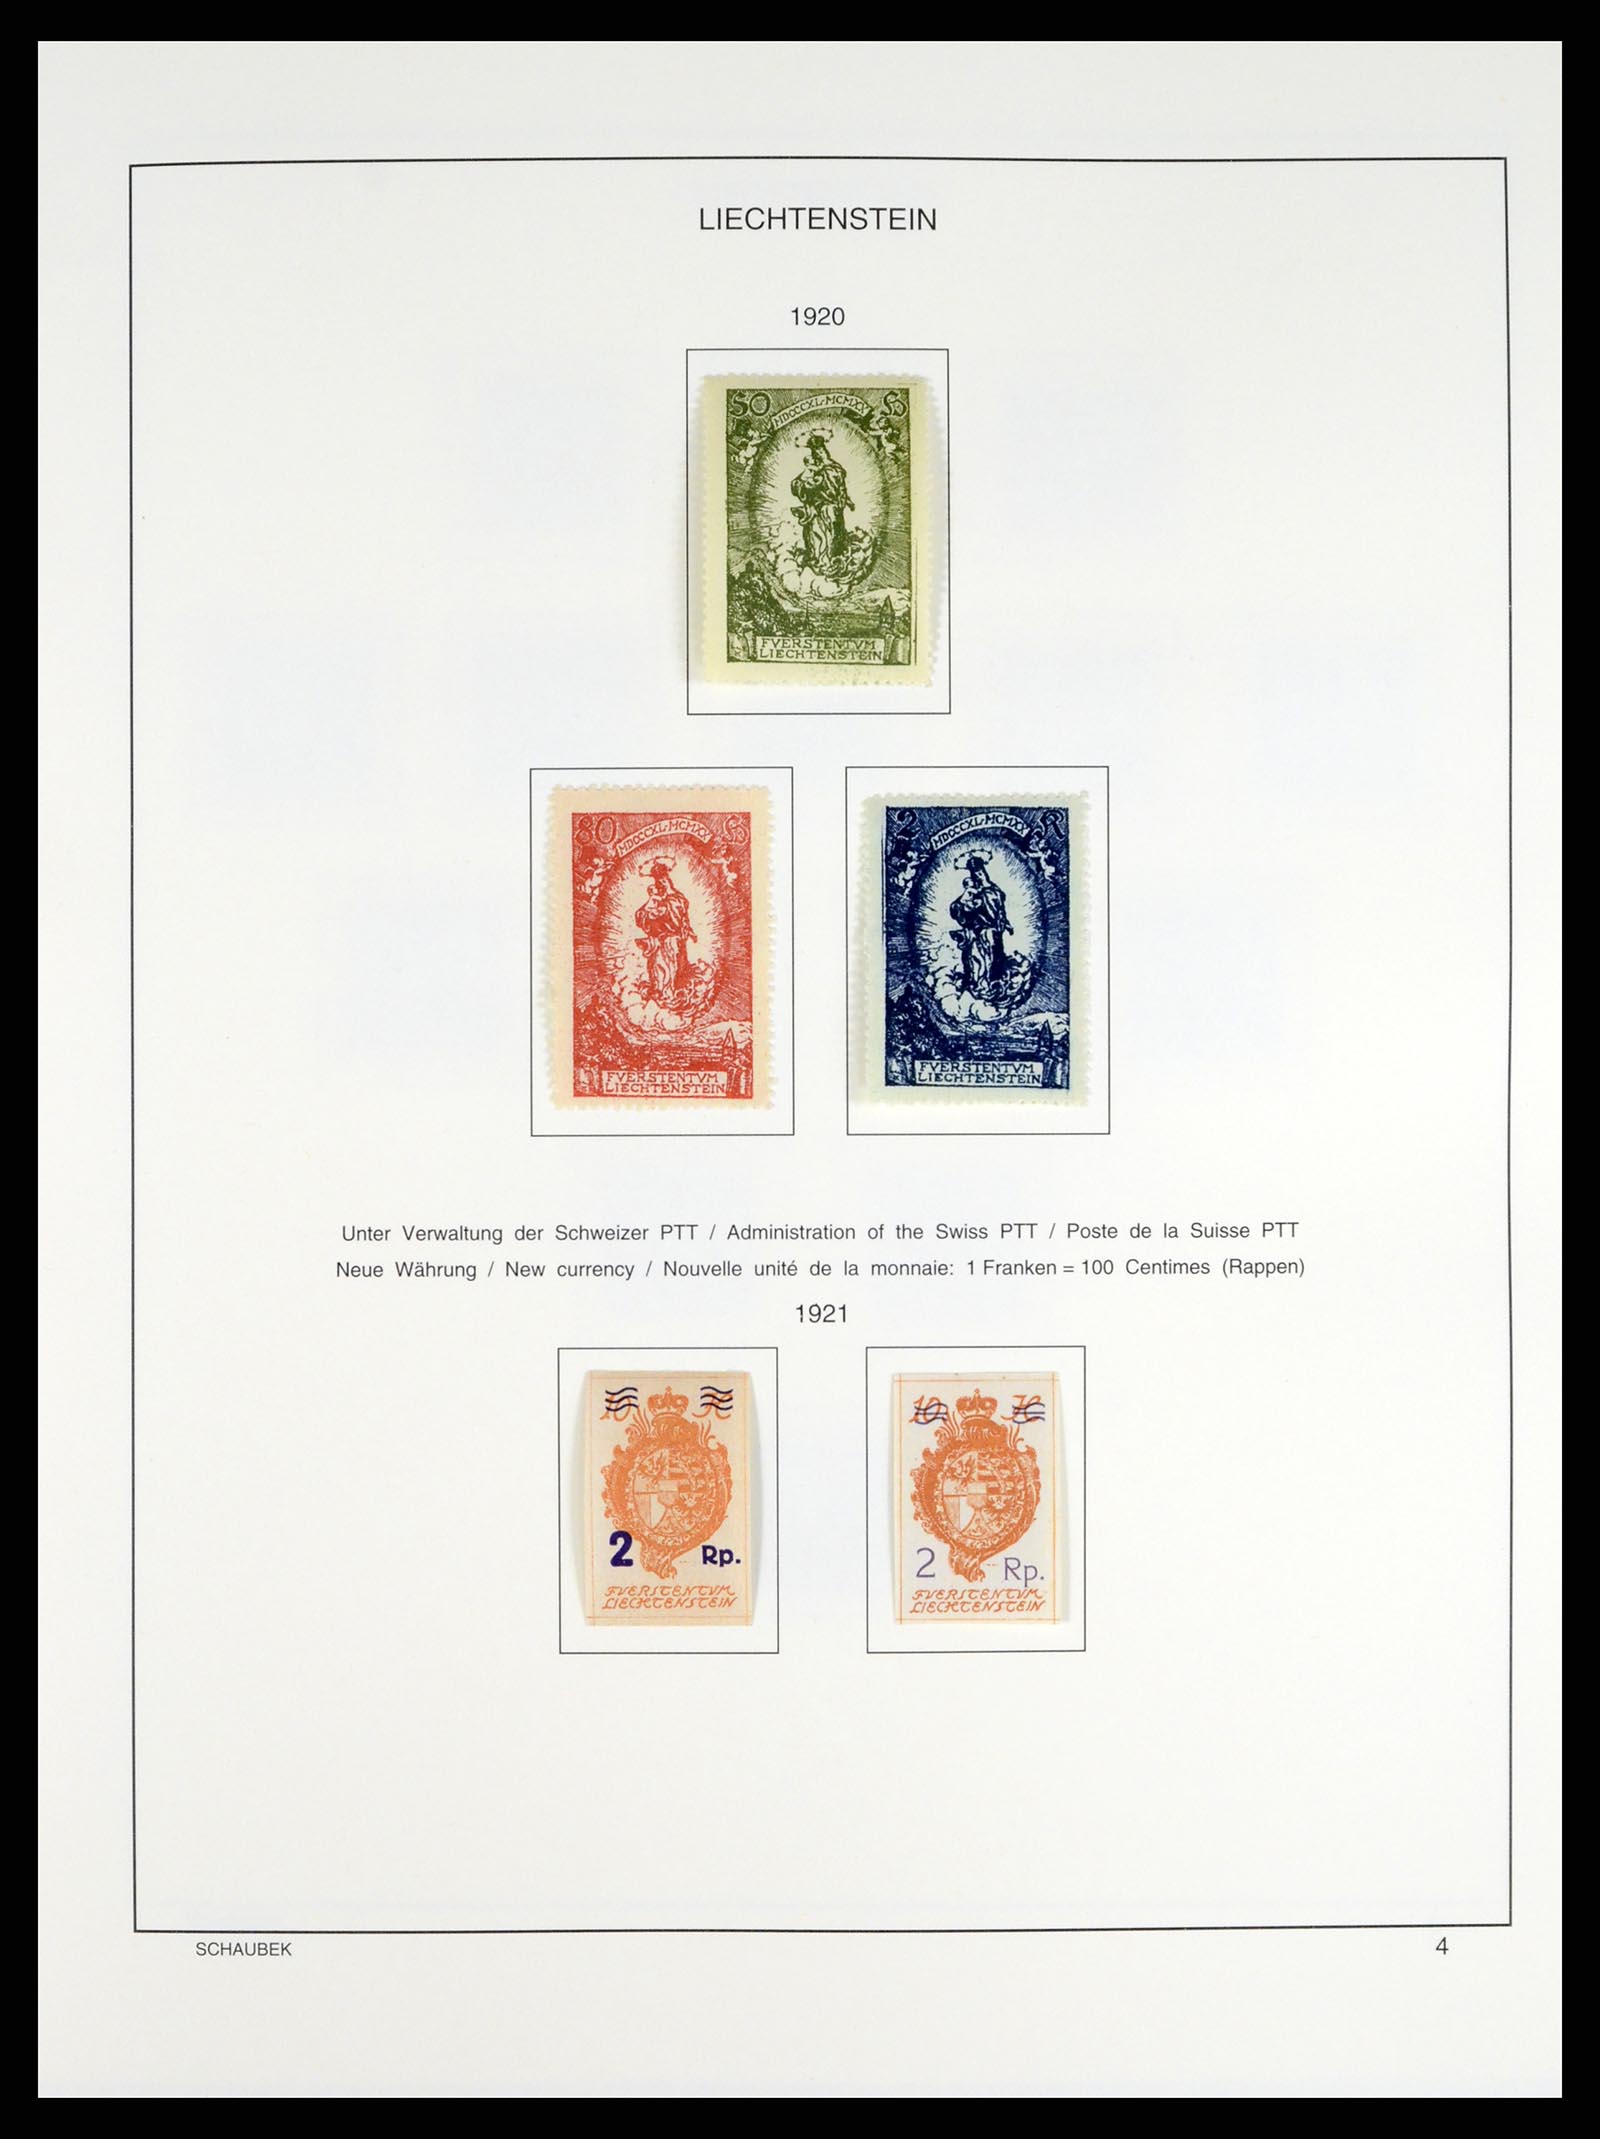 37547 004 - Stamp collection 37547 Liechtenstein 1912-2011.